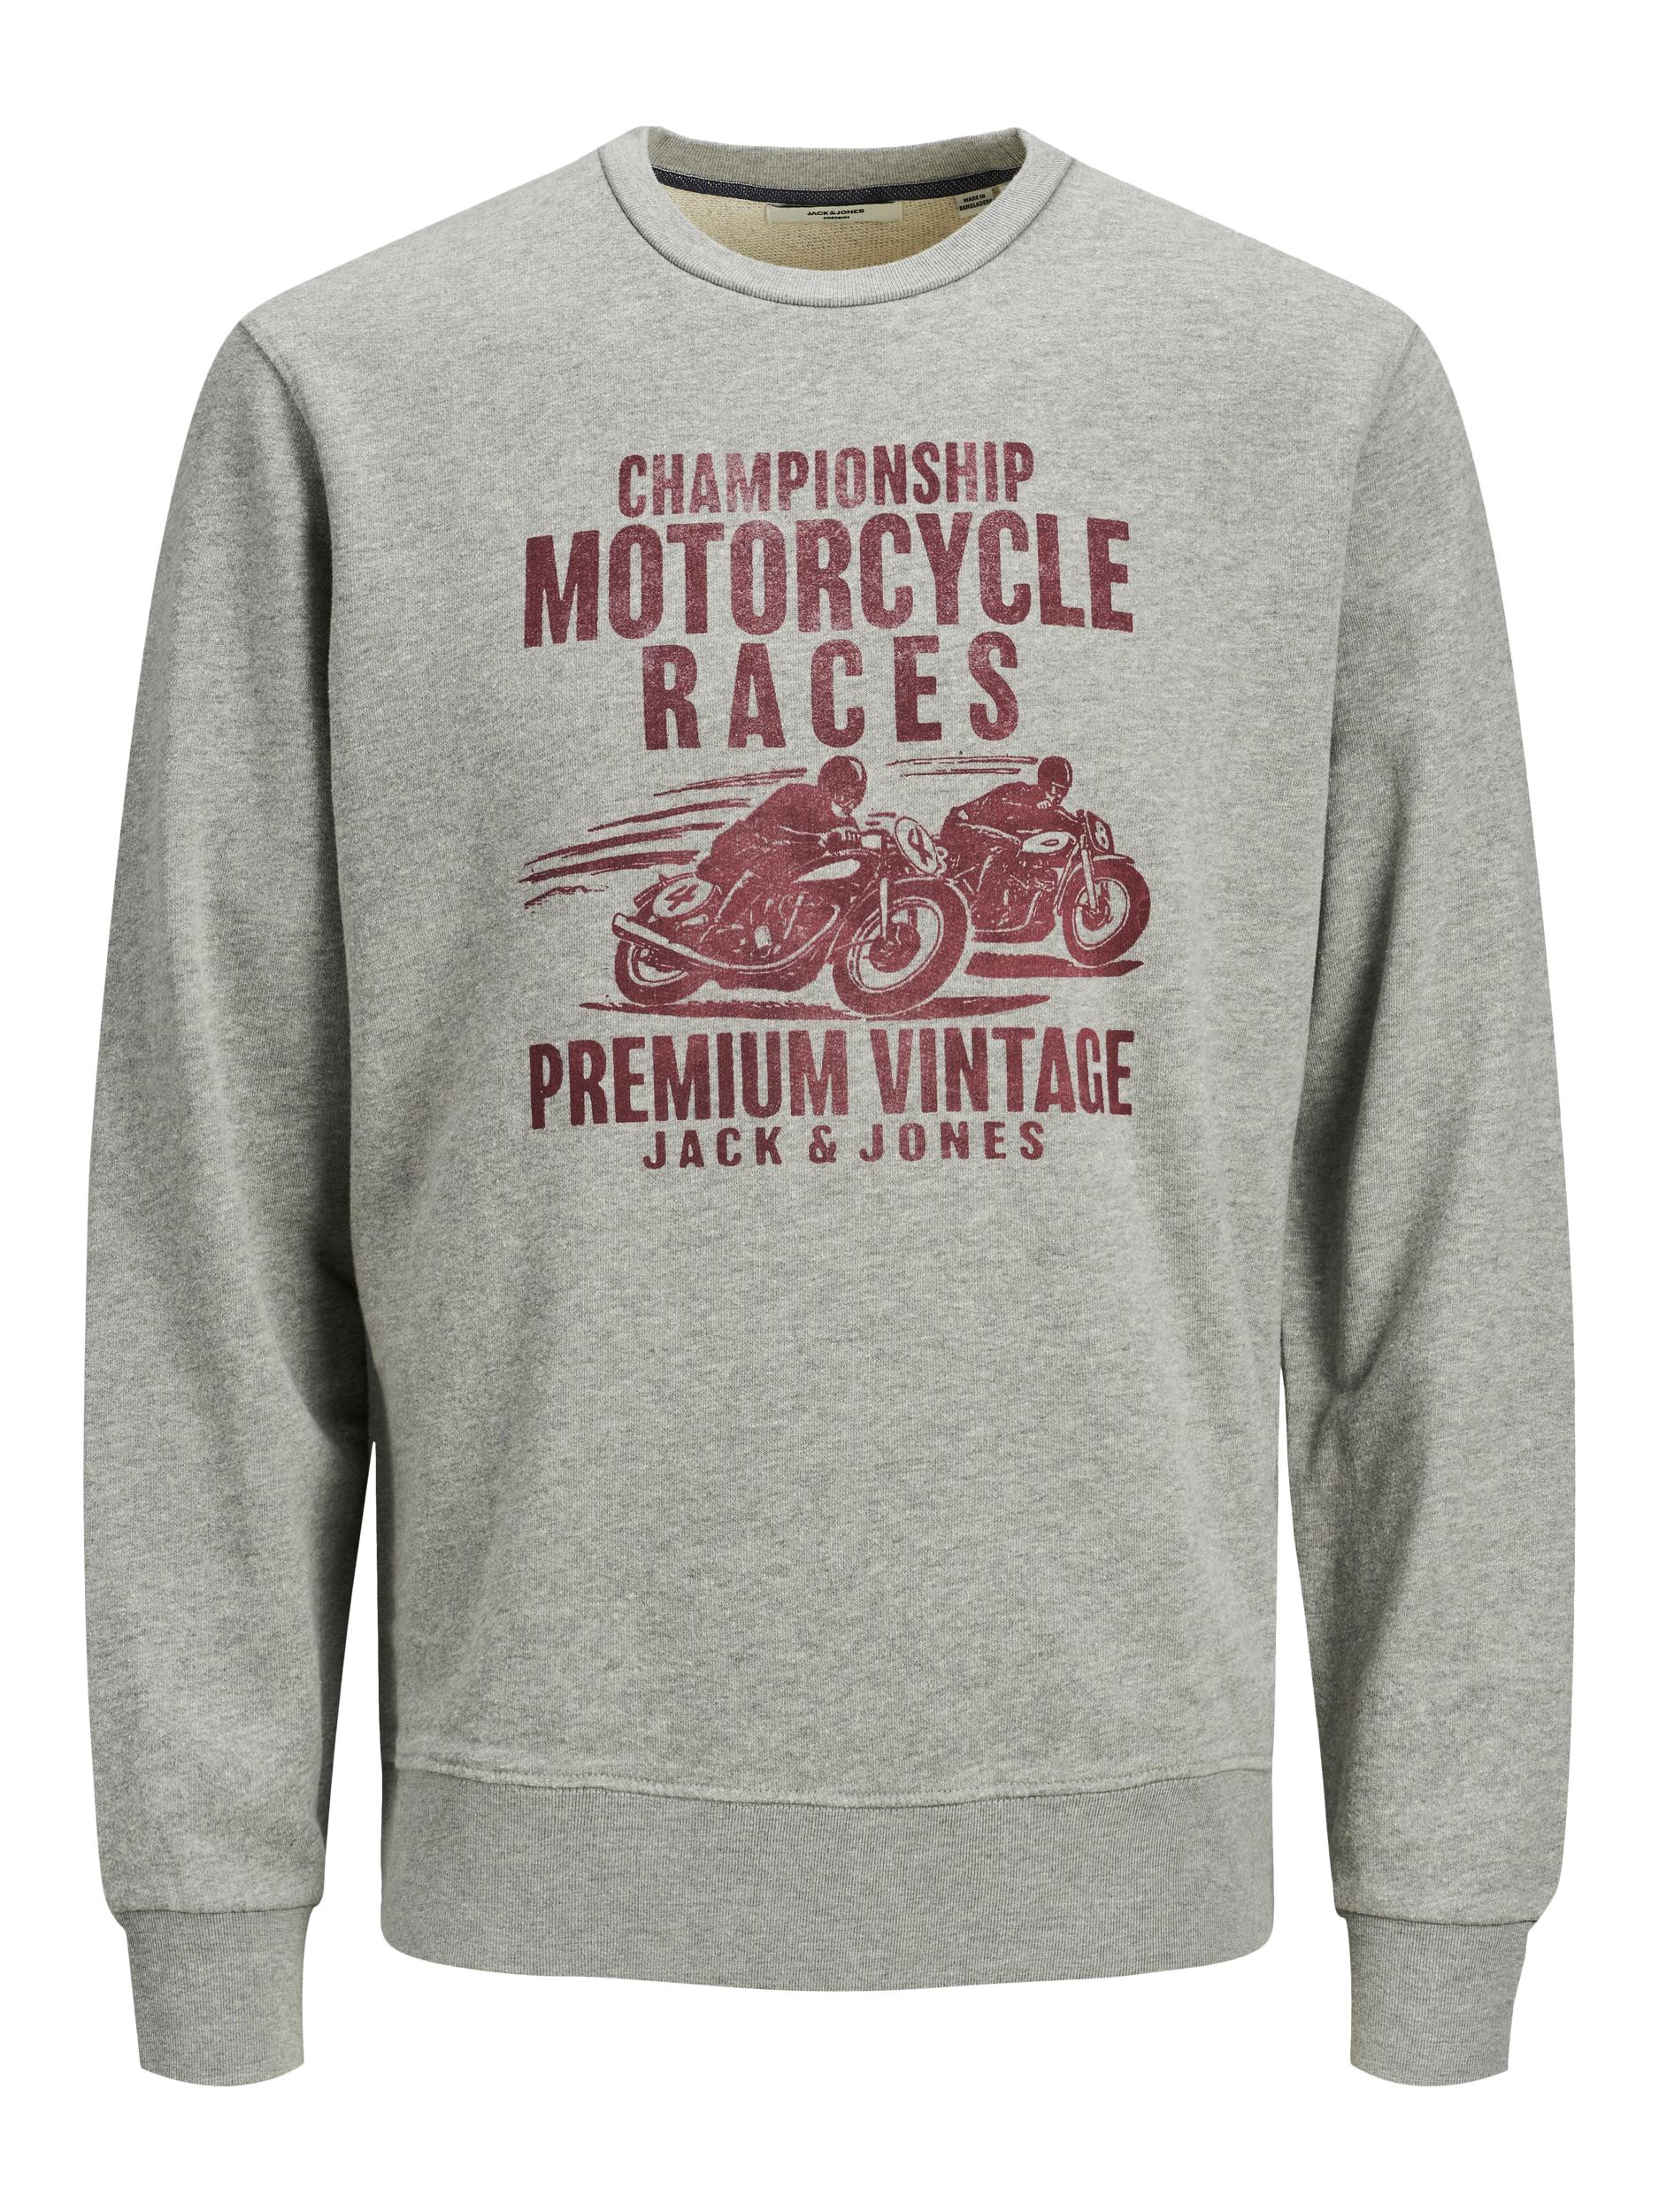 niezen bijwoord Hoeveelheid van Jack & Jones - Vintage Motor Sweatshirt